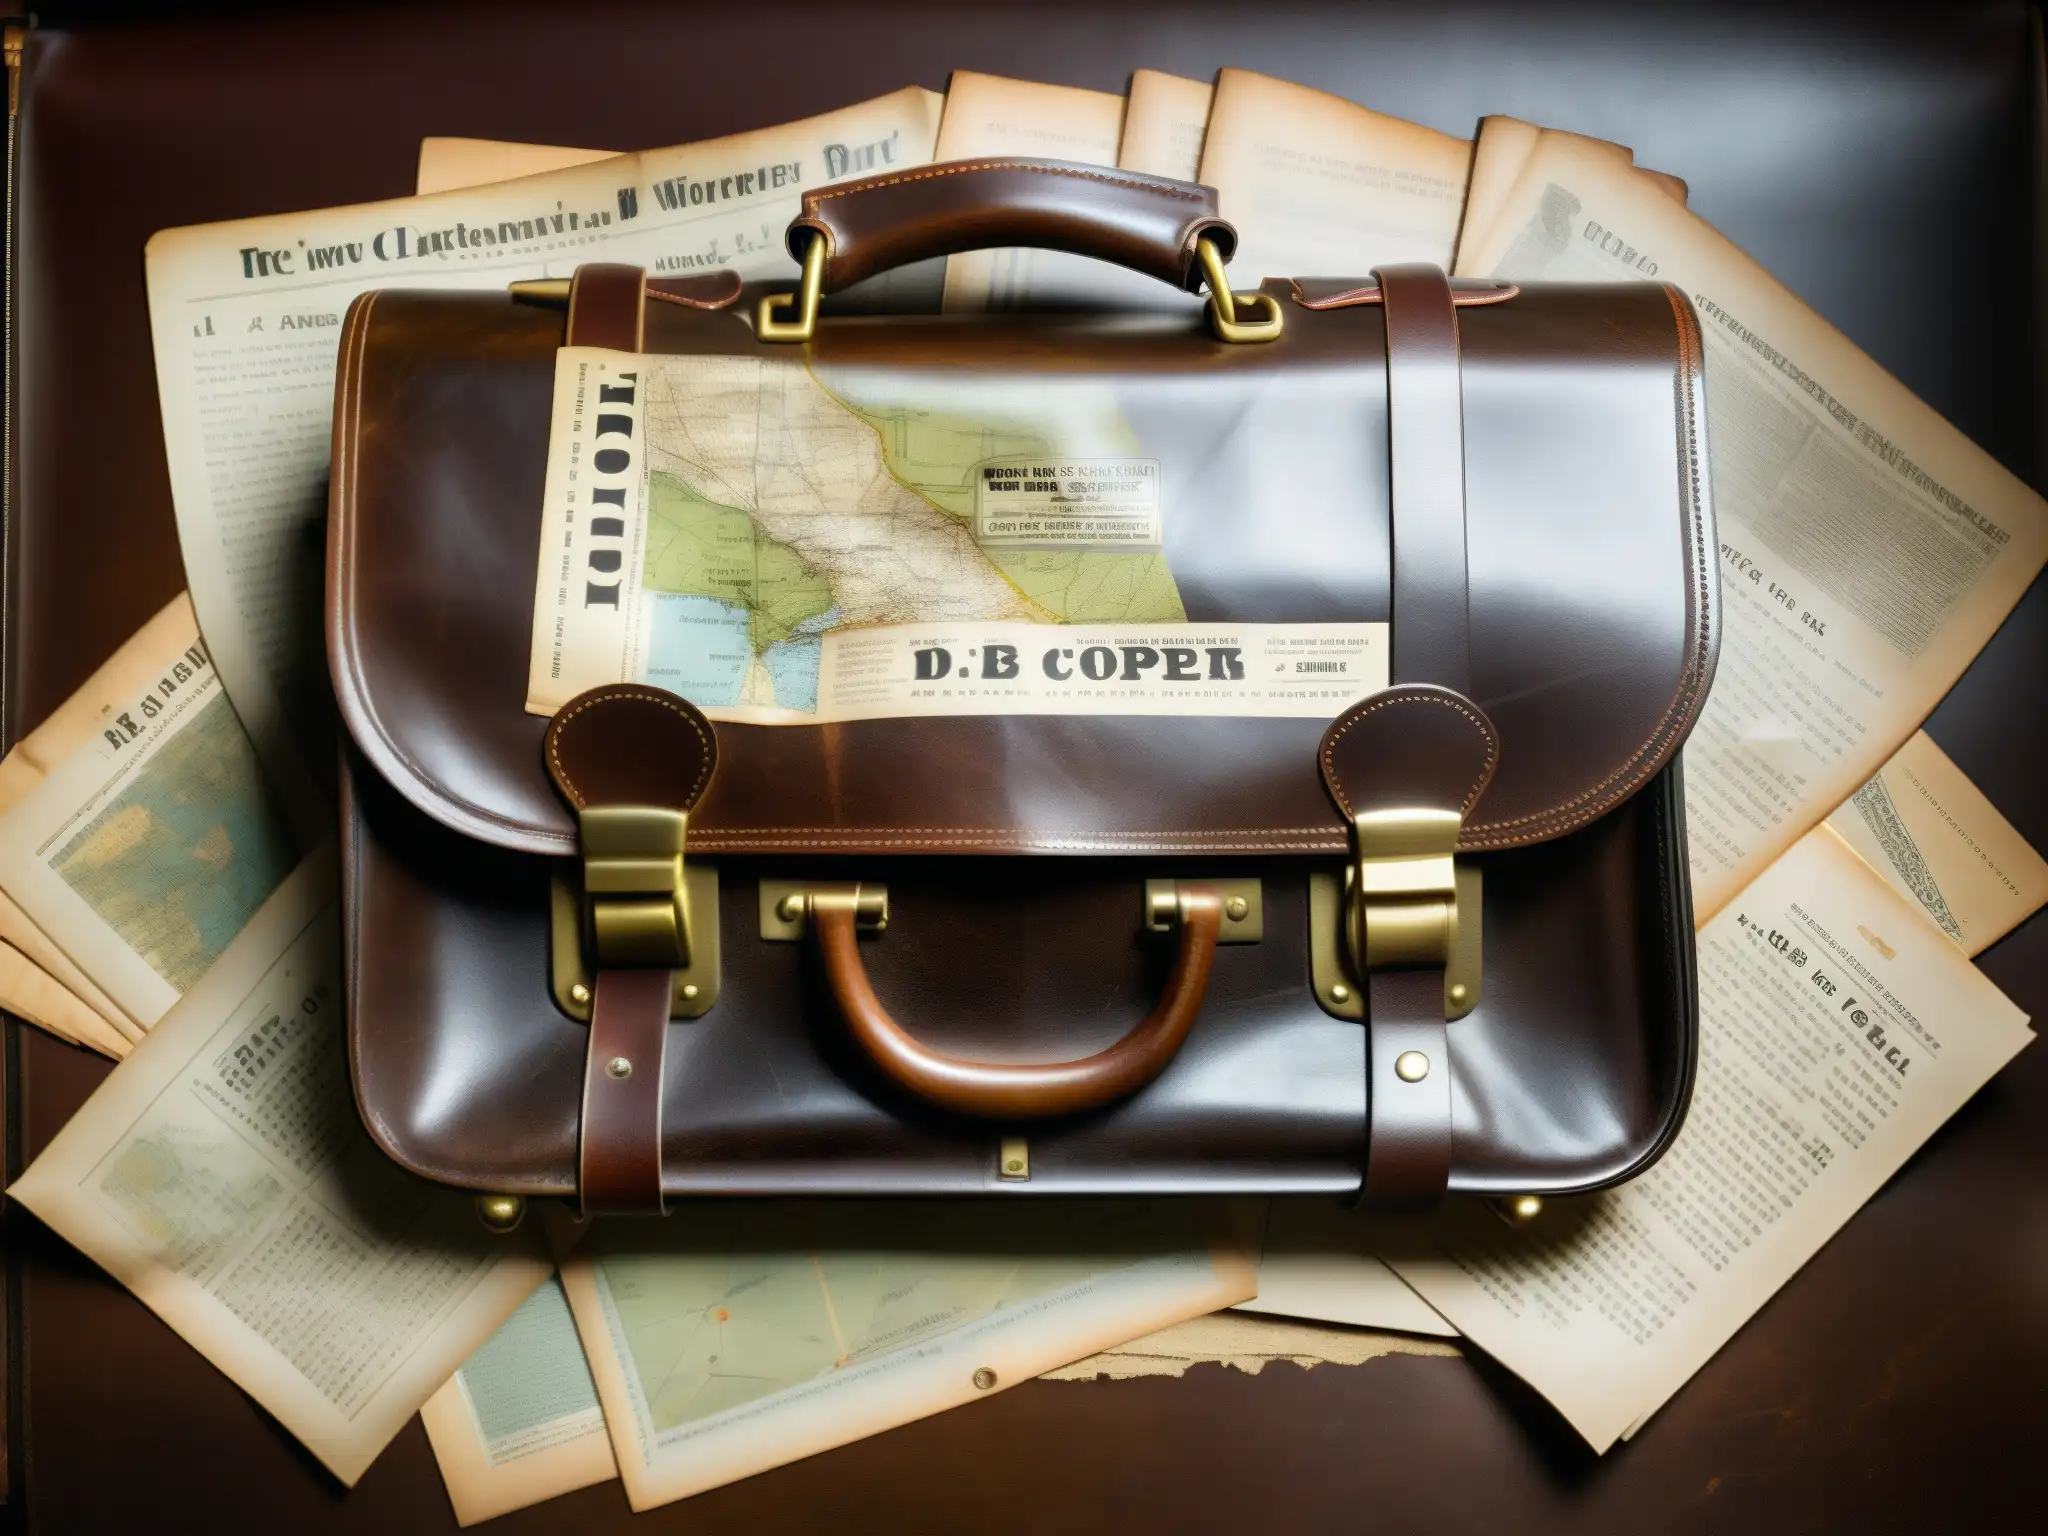 Un maletín vintage cubierto de polvo y telarañas, con clavos de latón desgastados, sobre una mesa iluminada tenue, evocando el misterio del maletín D